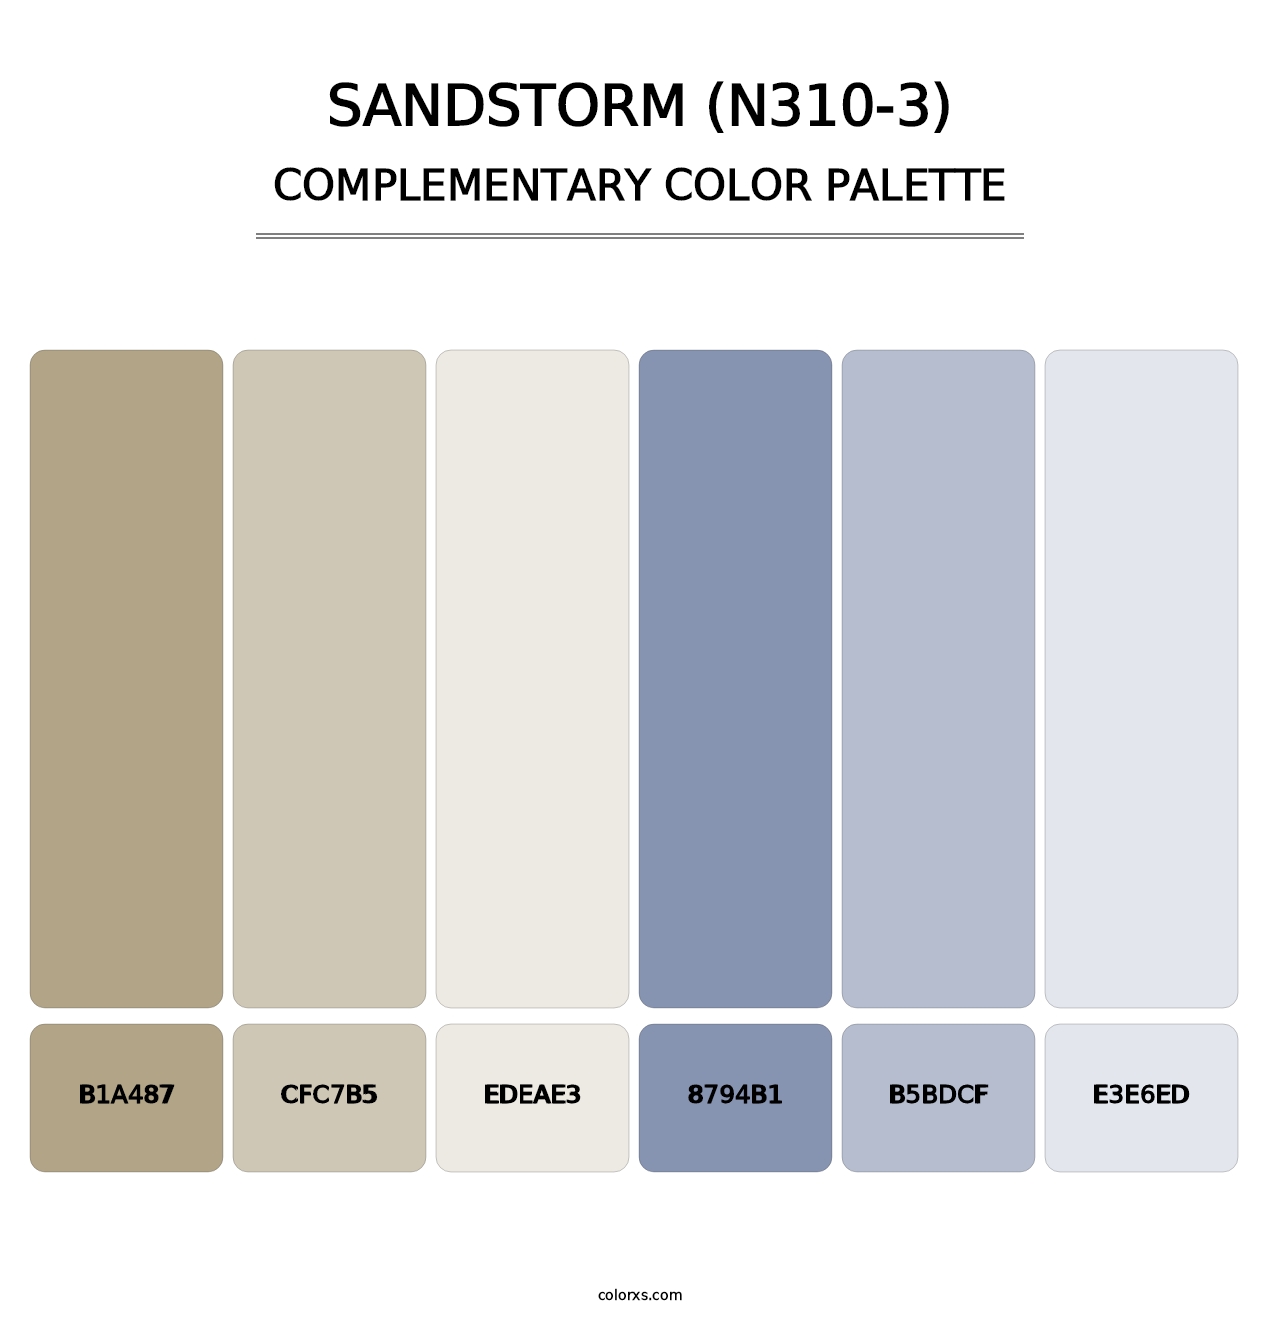 Sandstorm (N310-3) - Complementary Color Palette